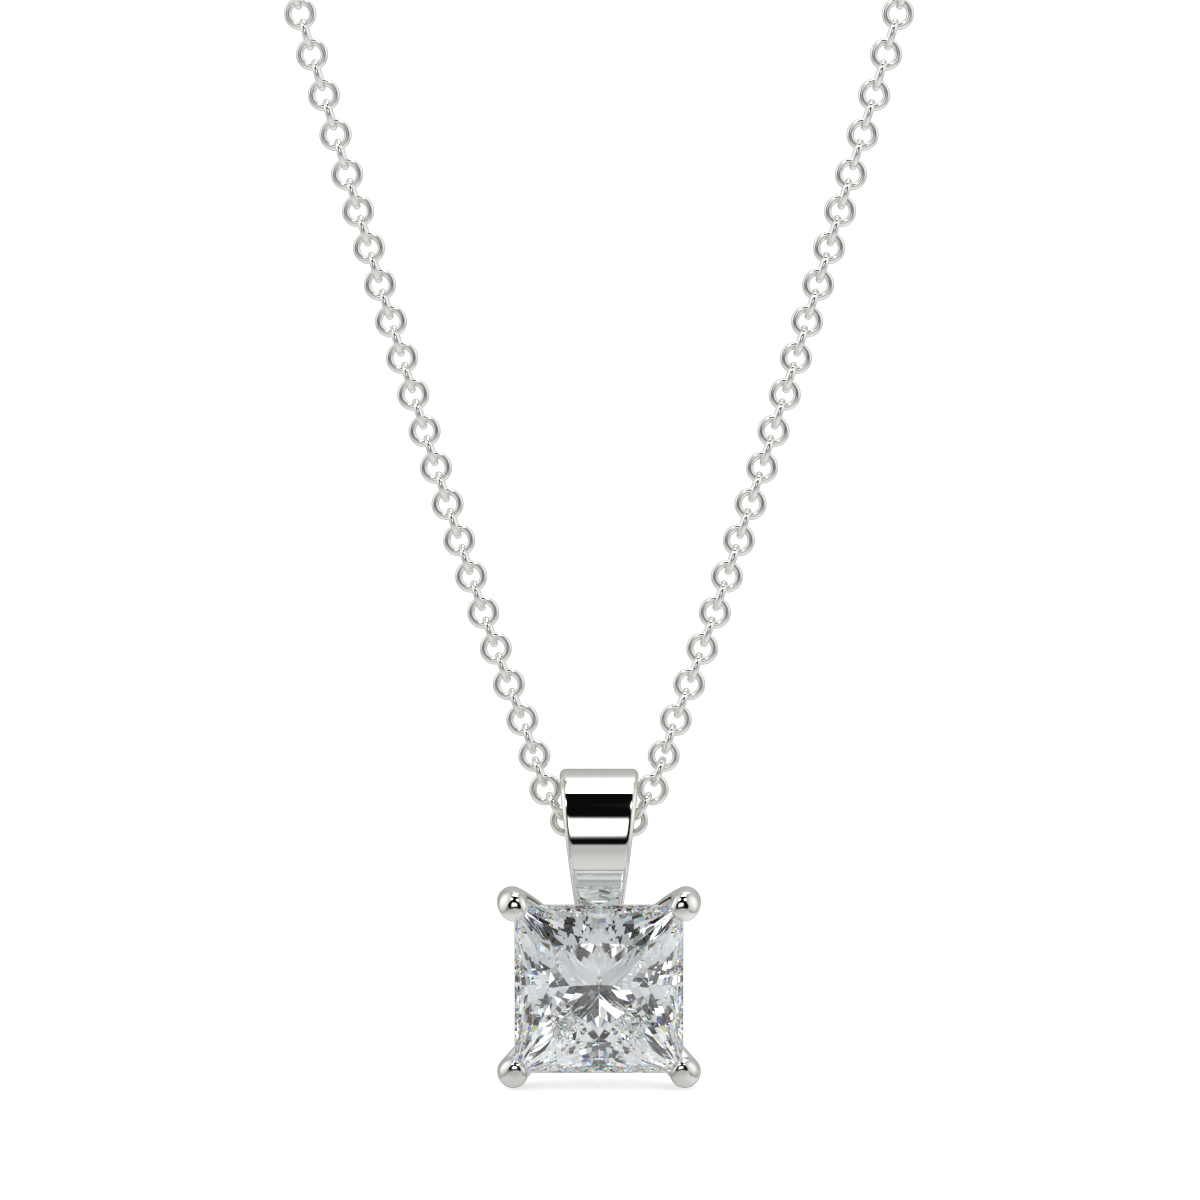 Buy Solitaire Diamond Pendant